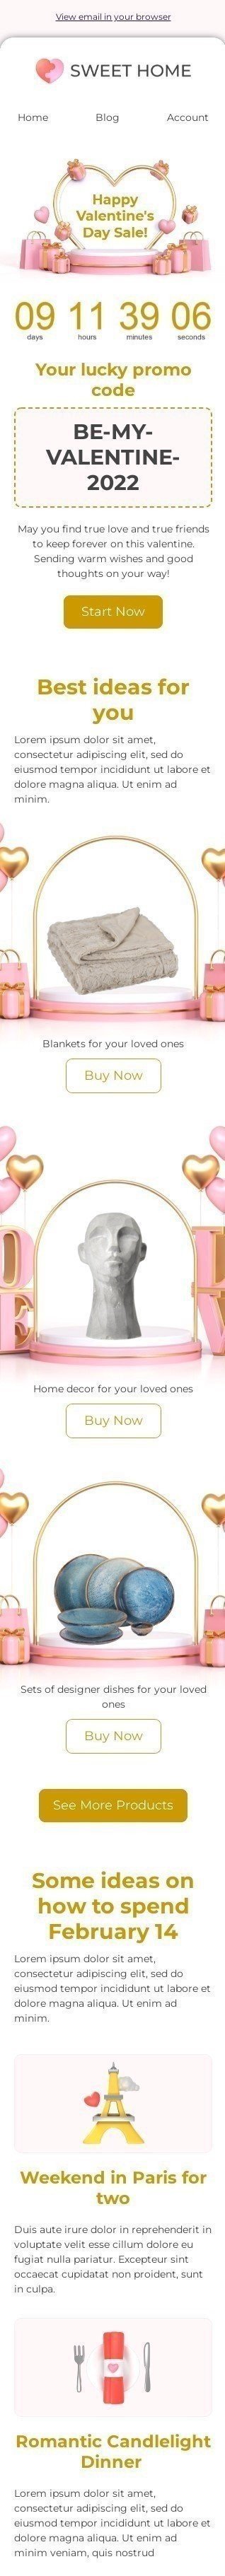 Modelo de E-mail de «Seja meu namorado» de Dia dos Namorados para a indústria de Móveis, Decoração e DIY Visualização de dispositivo móvel